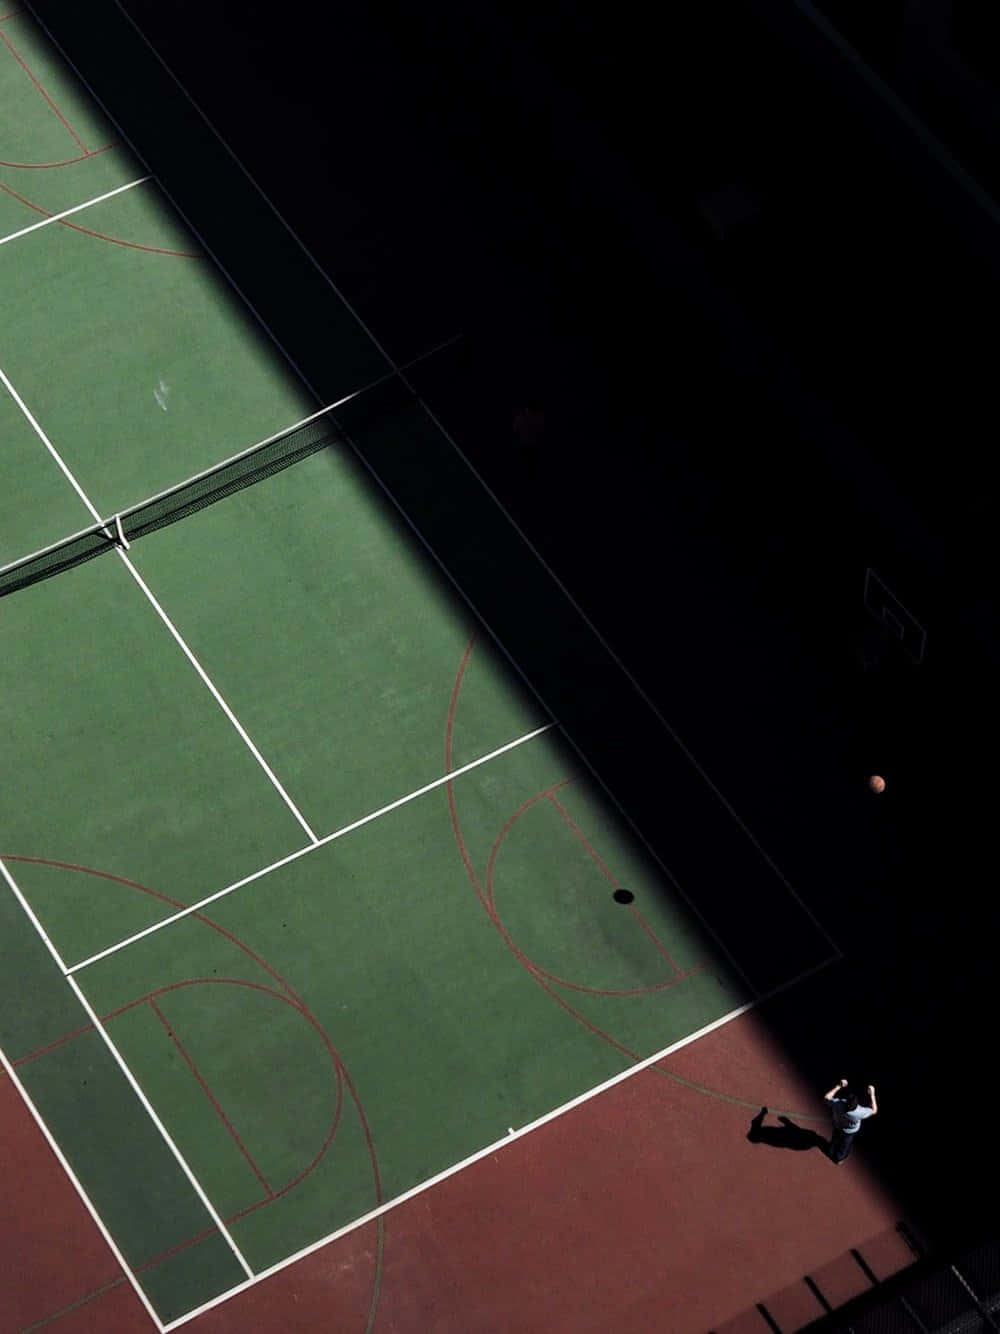 Eintennisplatz Mit Einer Person, Die Tennis Spielt.